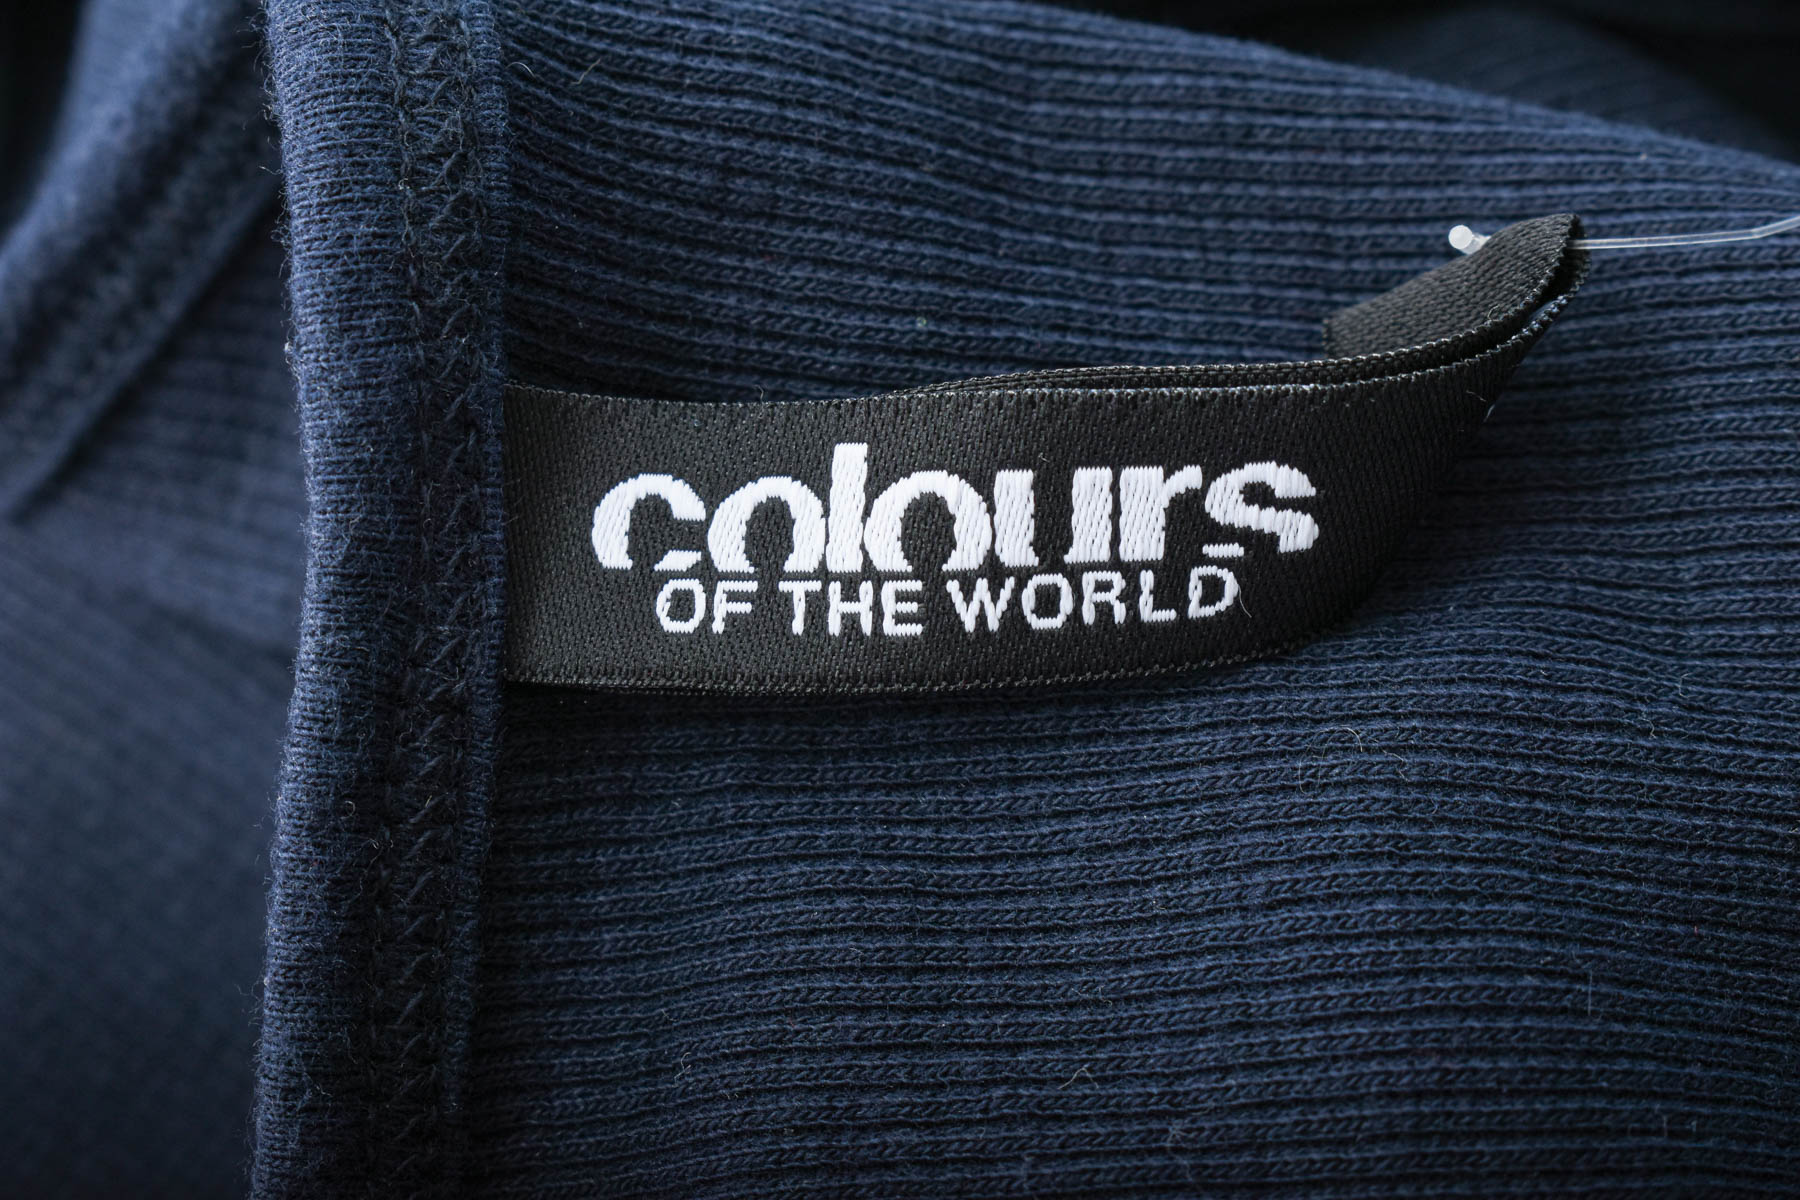 Γυνεκείο τοπ - Colours of the world - 2